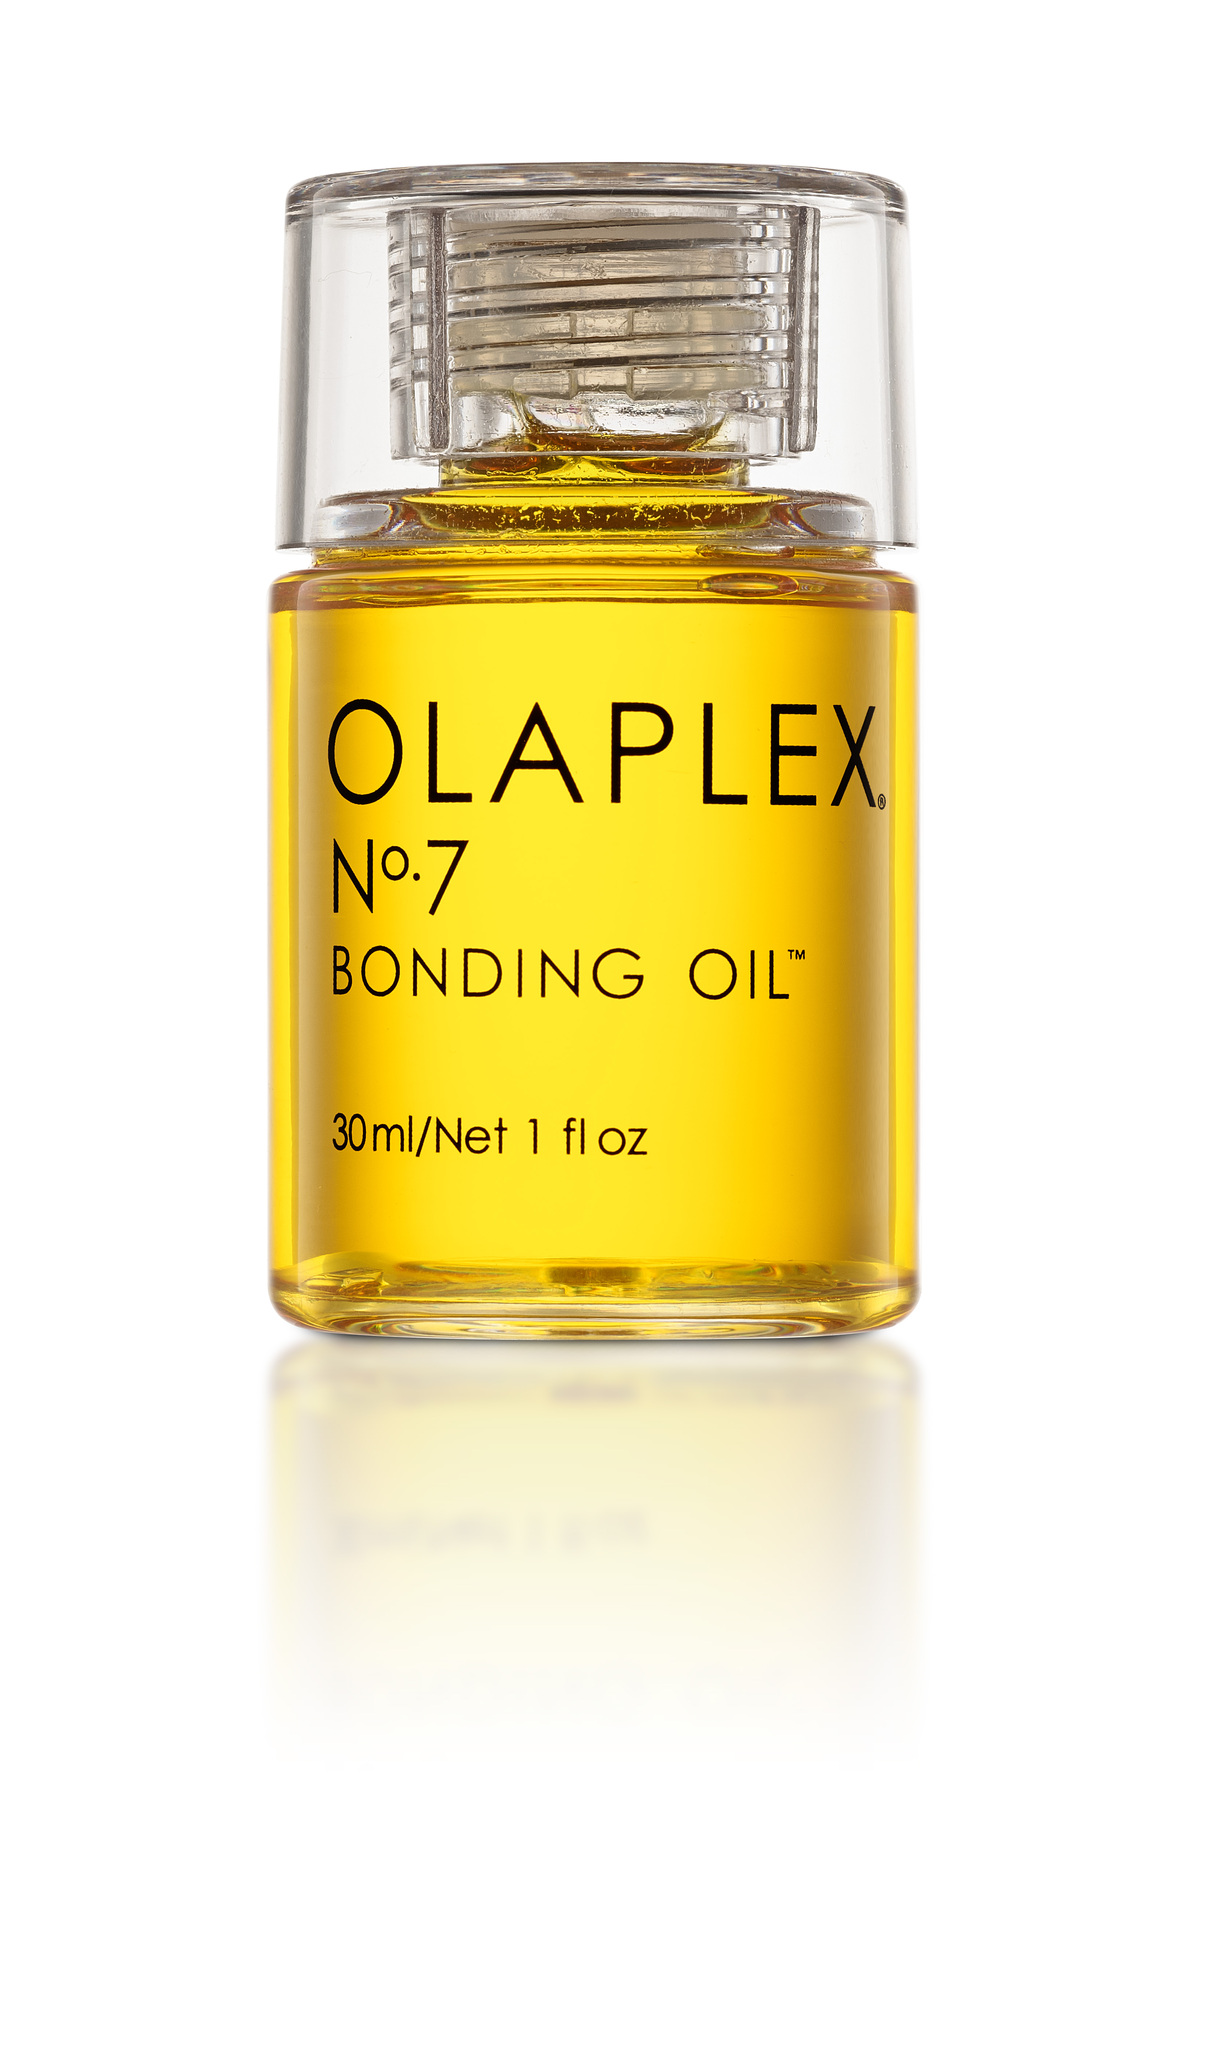 Olaplex no.6 & no.7